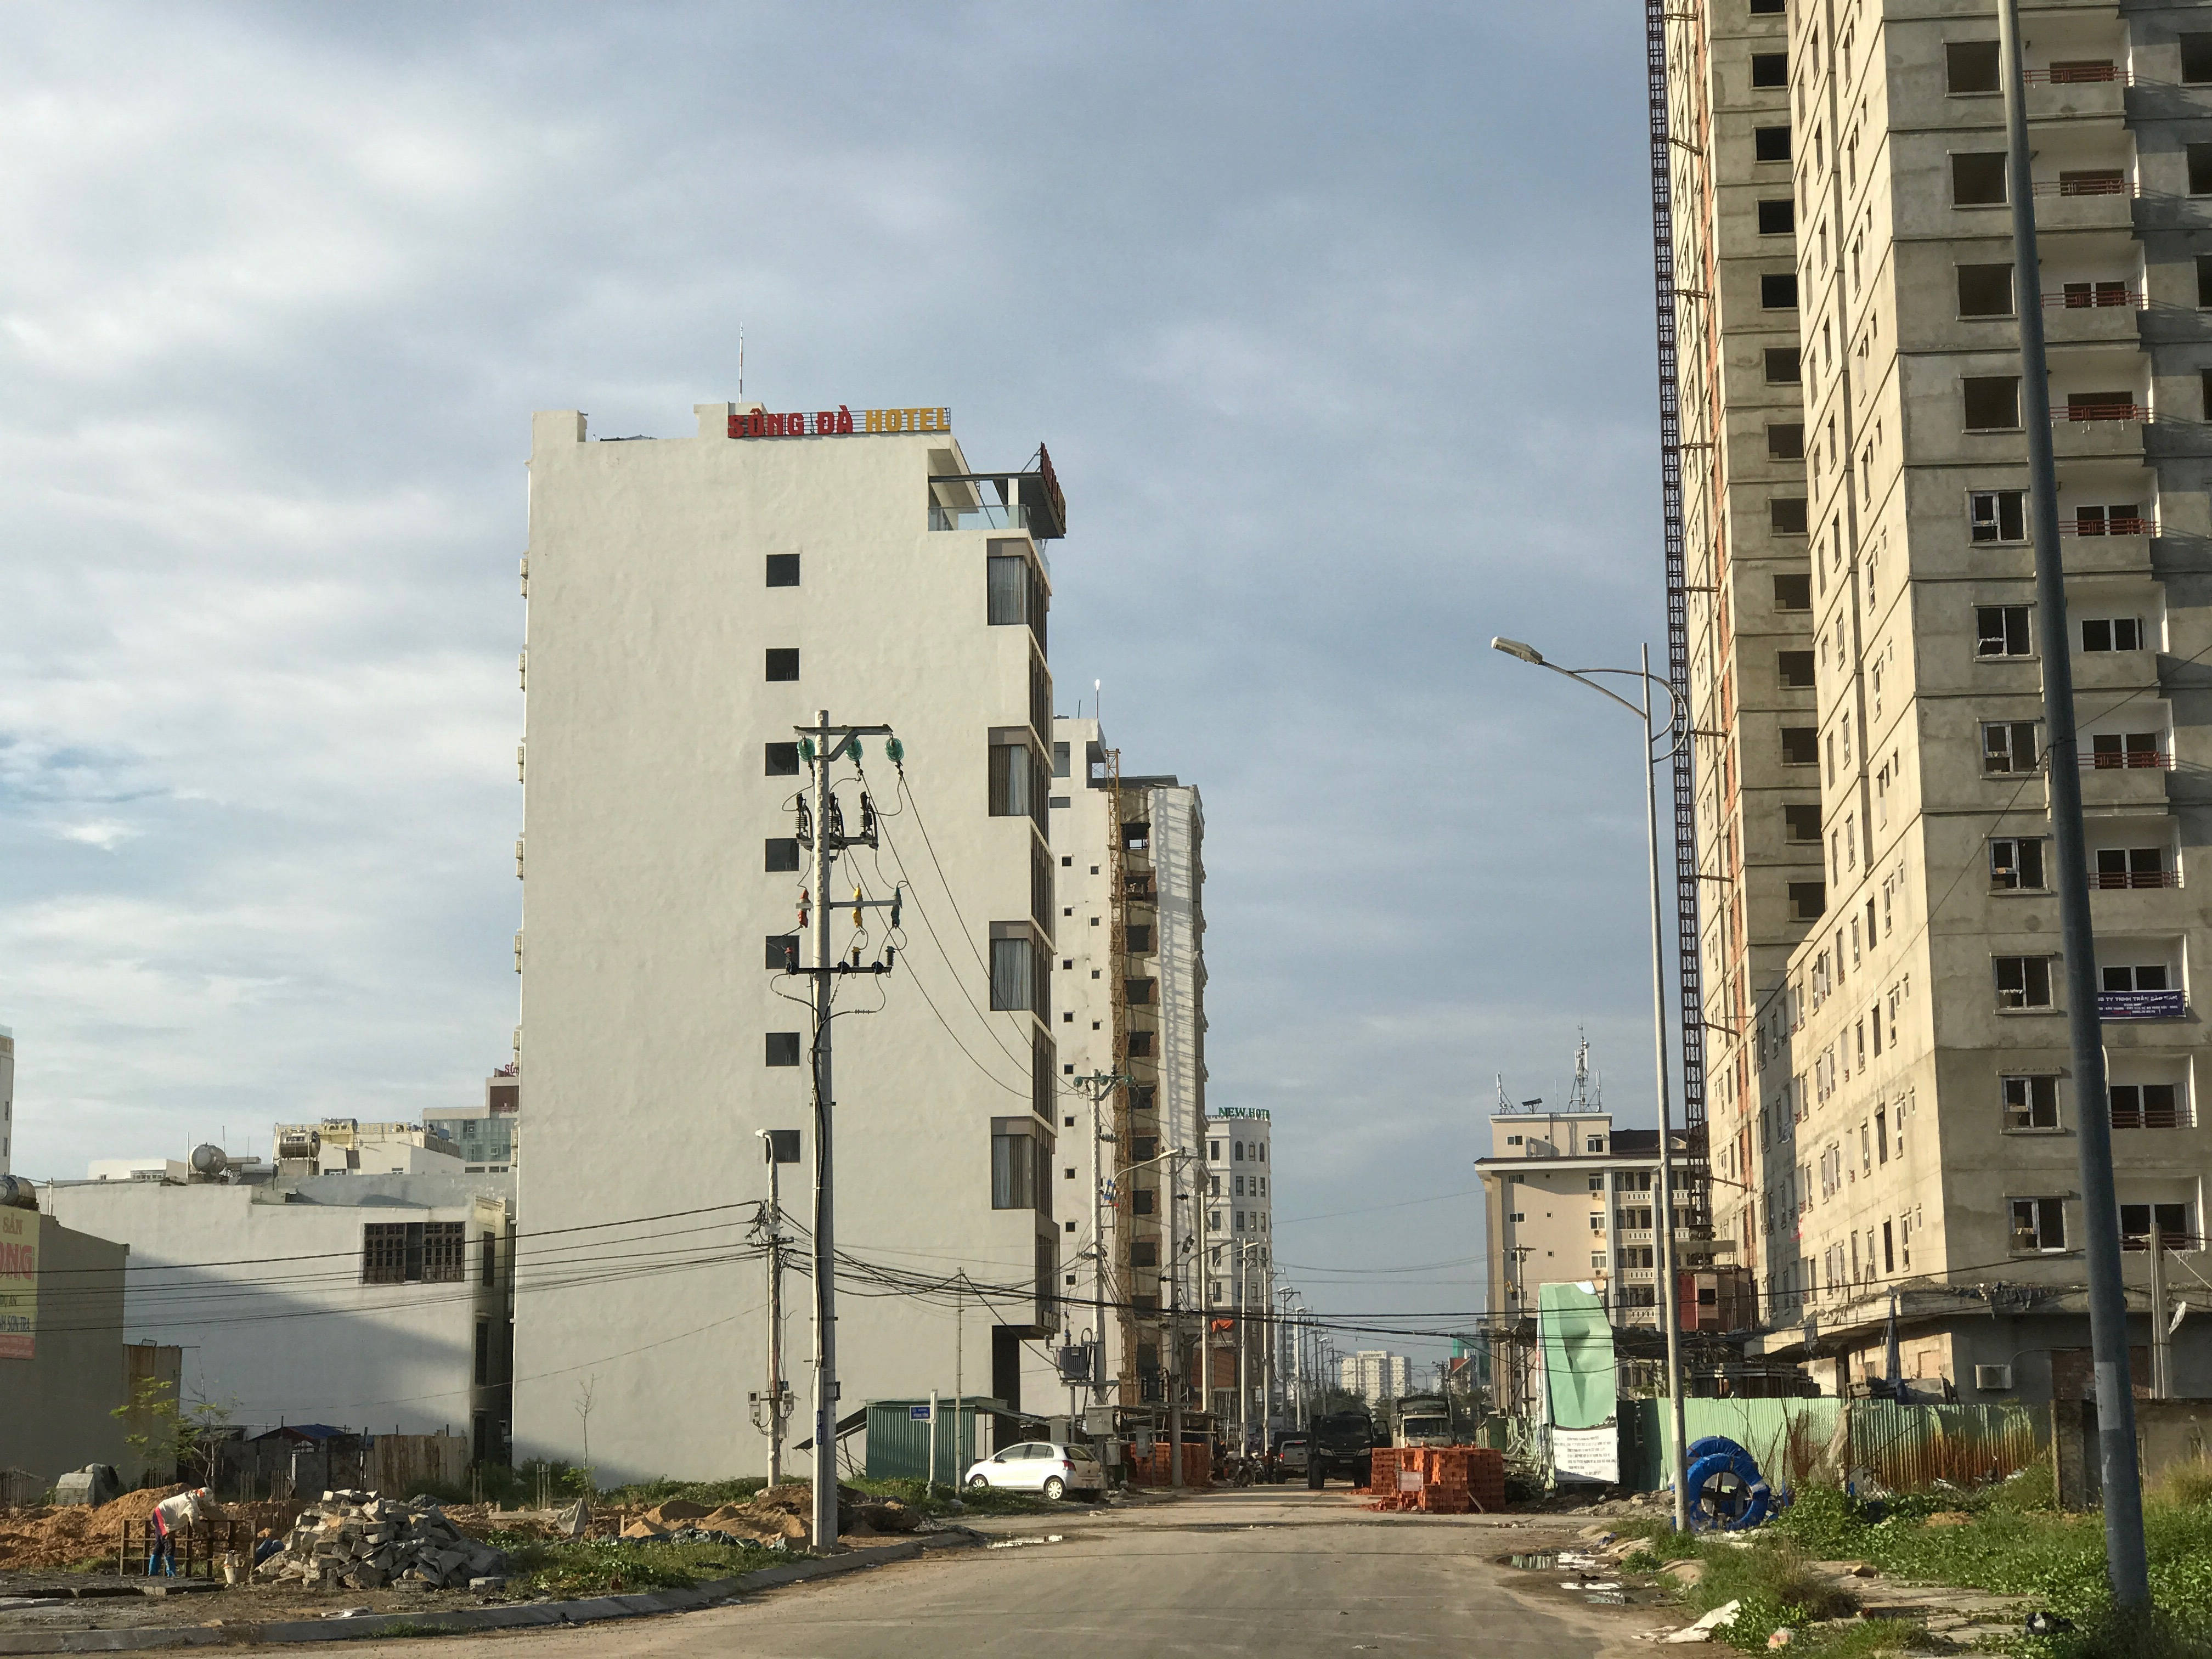 
Dọc theo con phố đường Hà Bổng (phường Phước Mỹ, Q.Sơn Trà), ngay sau khách sạn A La Carte (tiêu chuẩn 5 sao) dài chưa đến 500m nhưng có đến 35-40 khách sạn lớn, nhỏ các loại.
